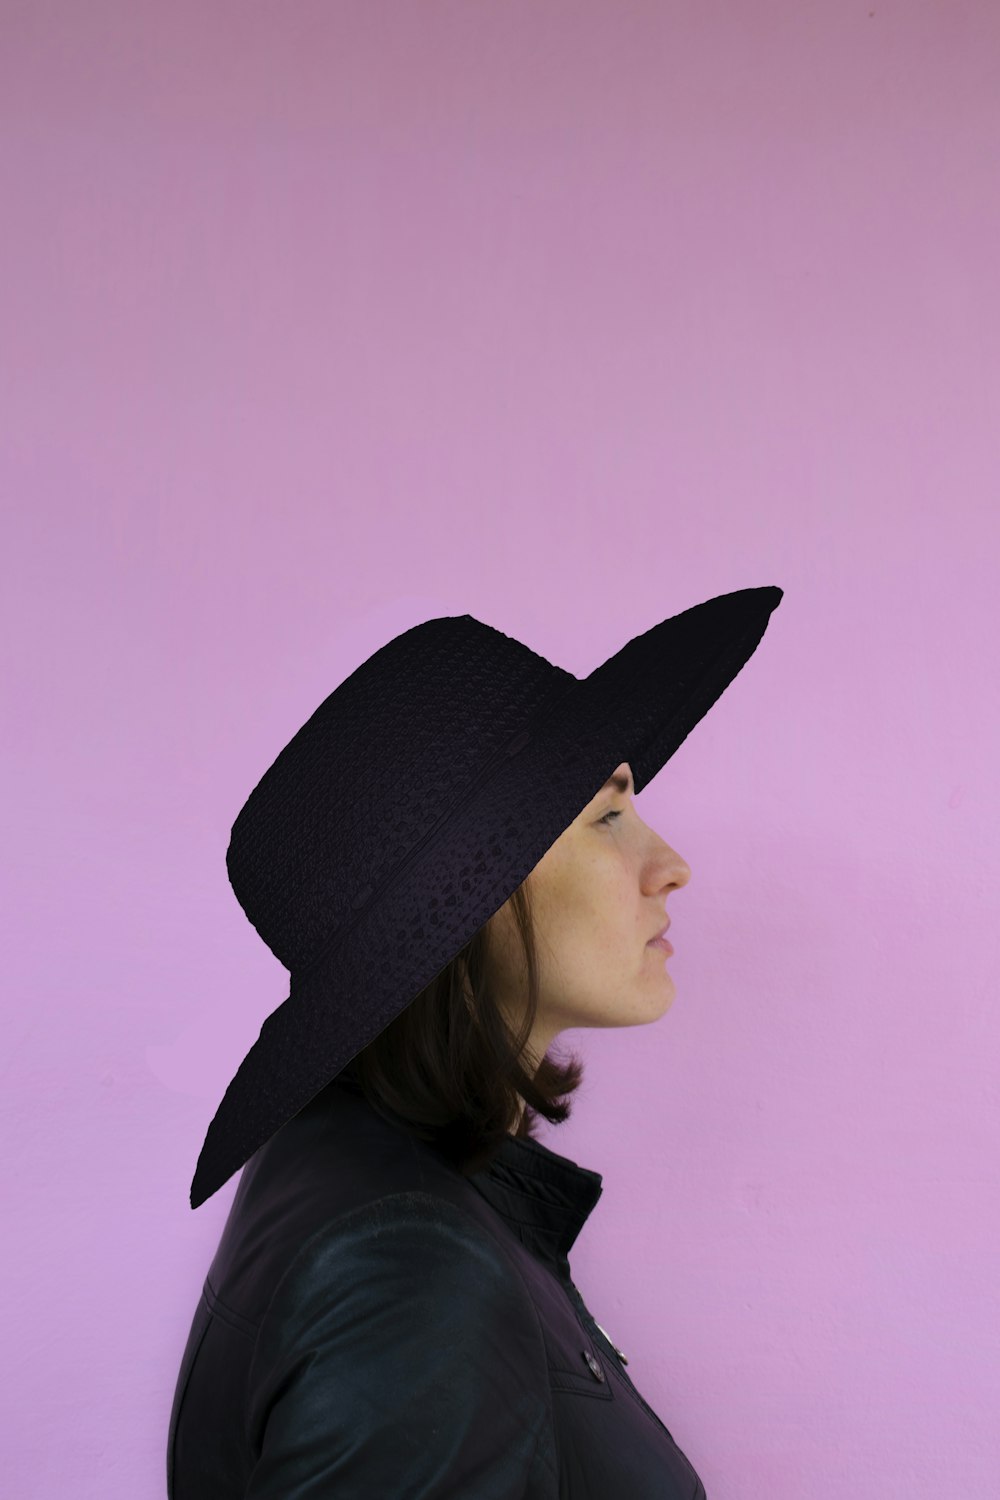 Frau mit schwarzem Hut und schwarzem Hemd